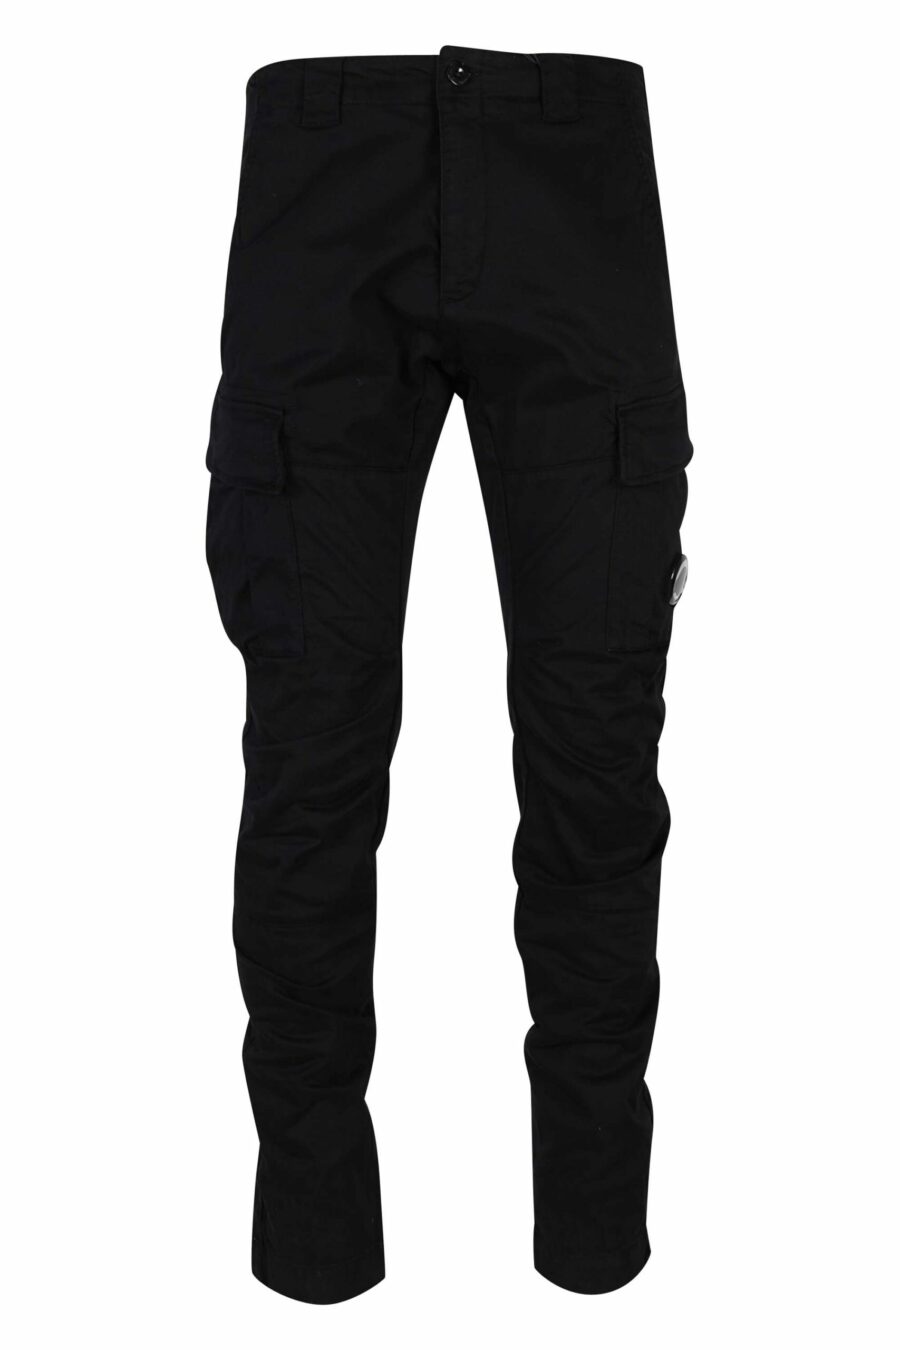 Pantalón negro estilo cargo de satén elástico y logo lente - 7620943597585 1 scaled